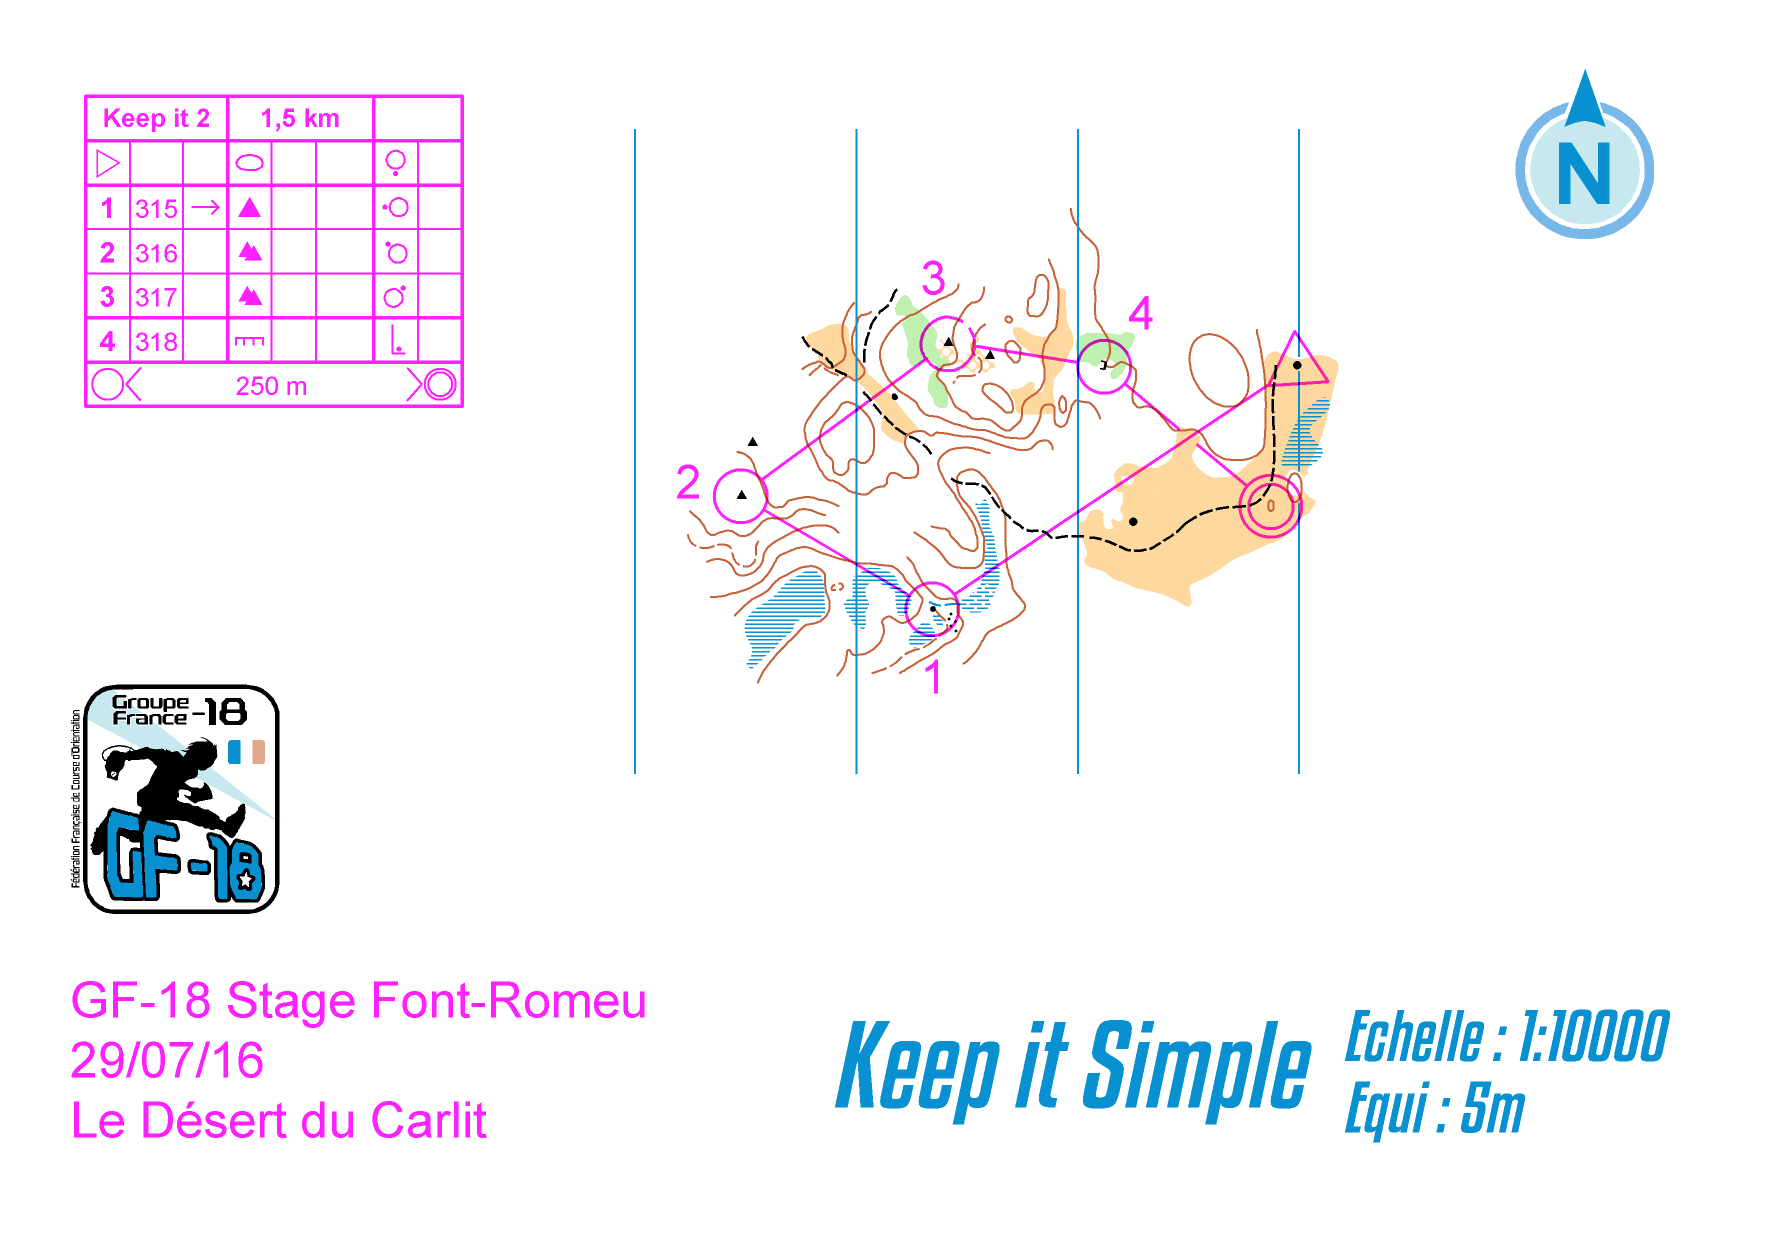 keep it simple 2 (28.08.2016)